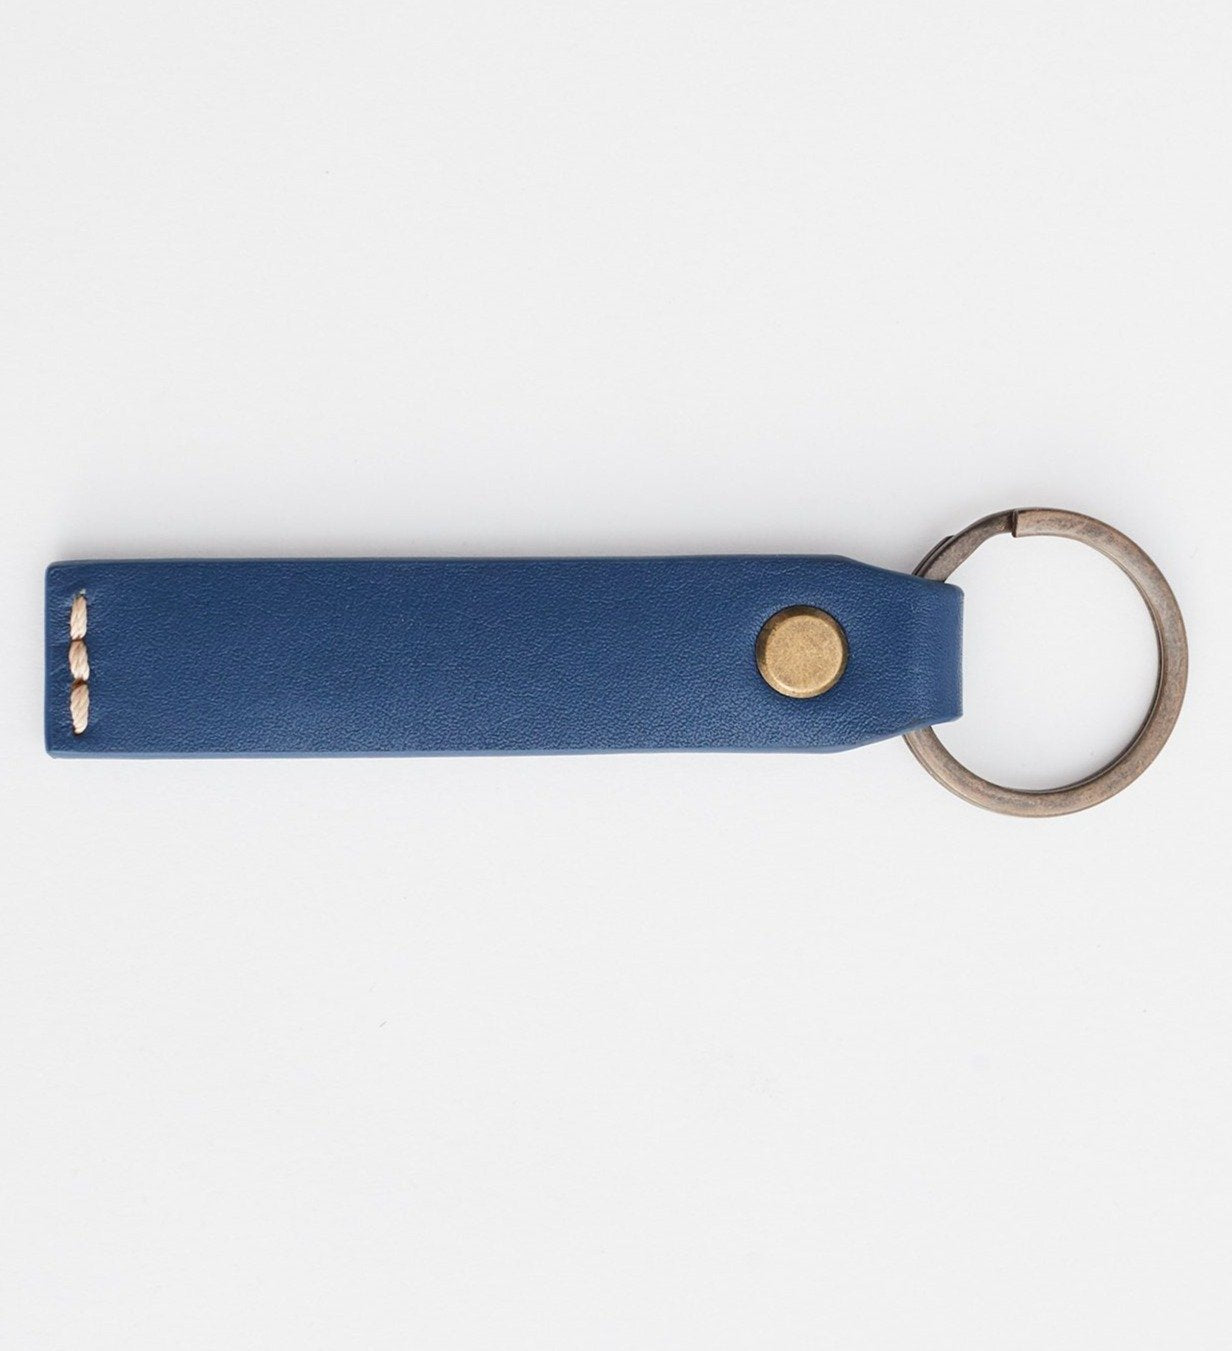 Slimline Leather Key Ring: Navy